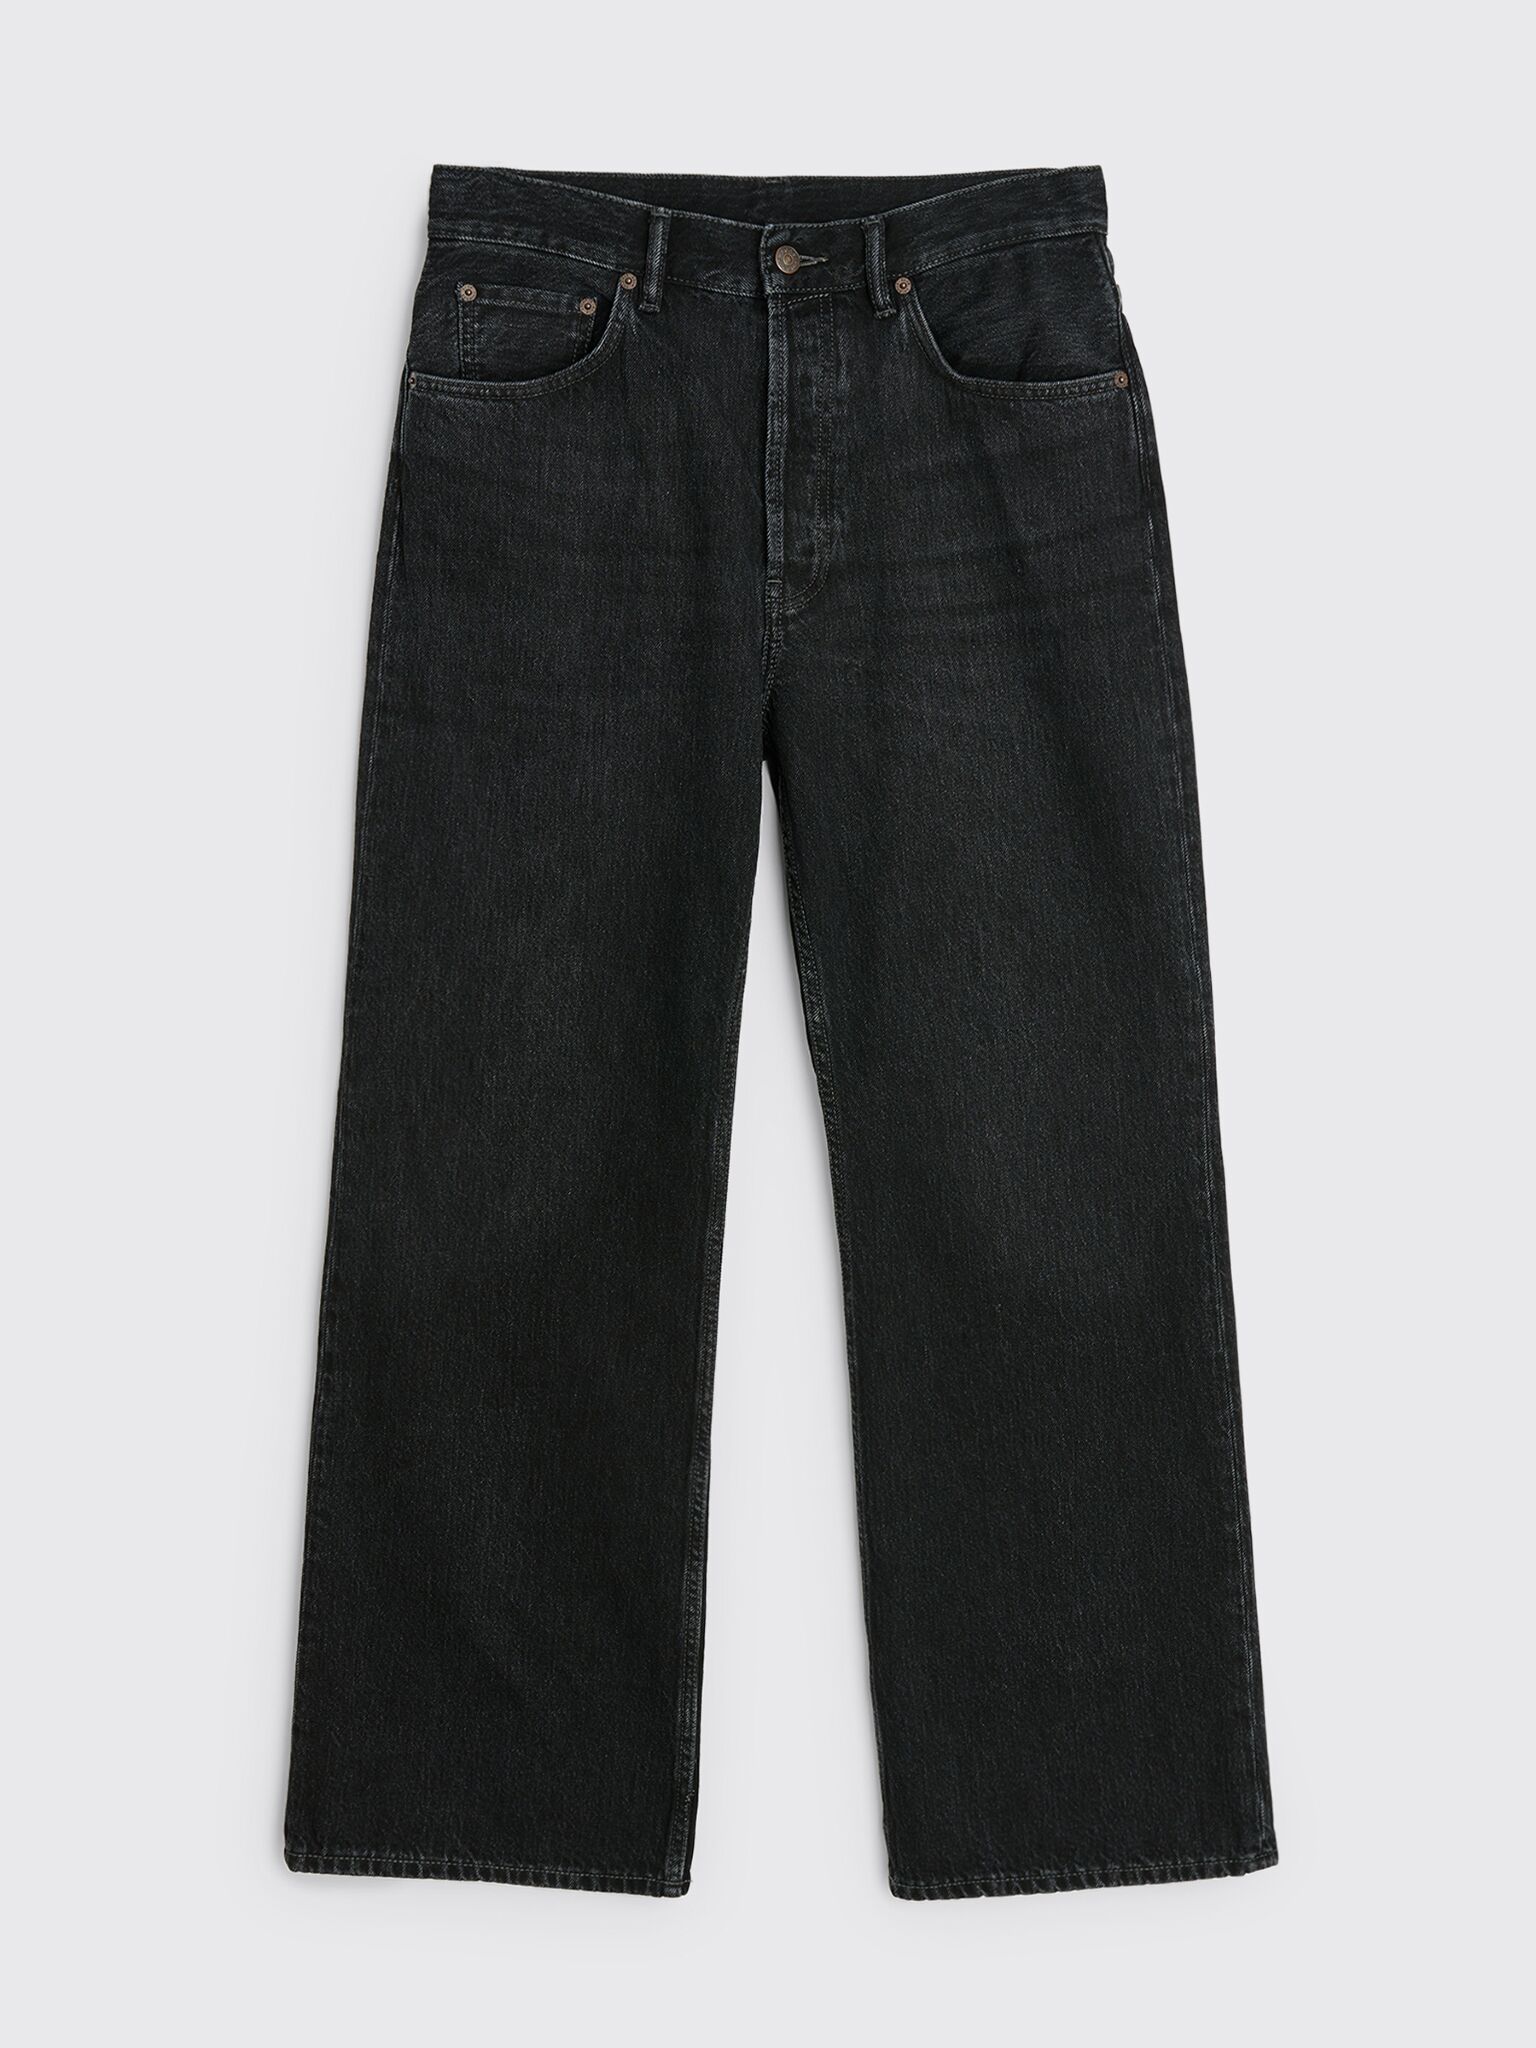 Très Bien - Acne Studios 2021M Jeans Vintage Black